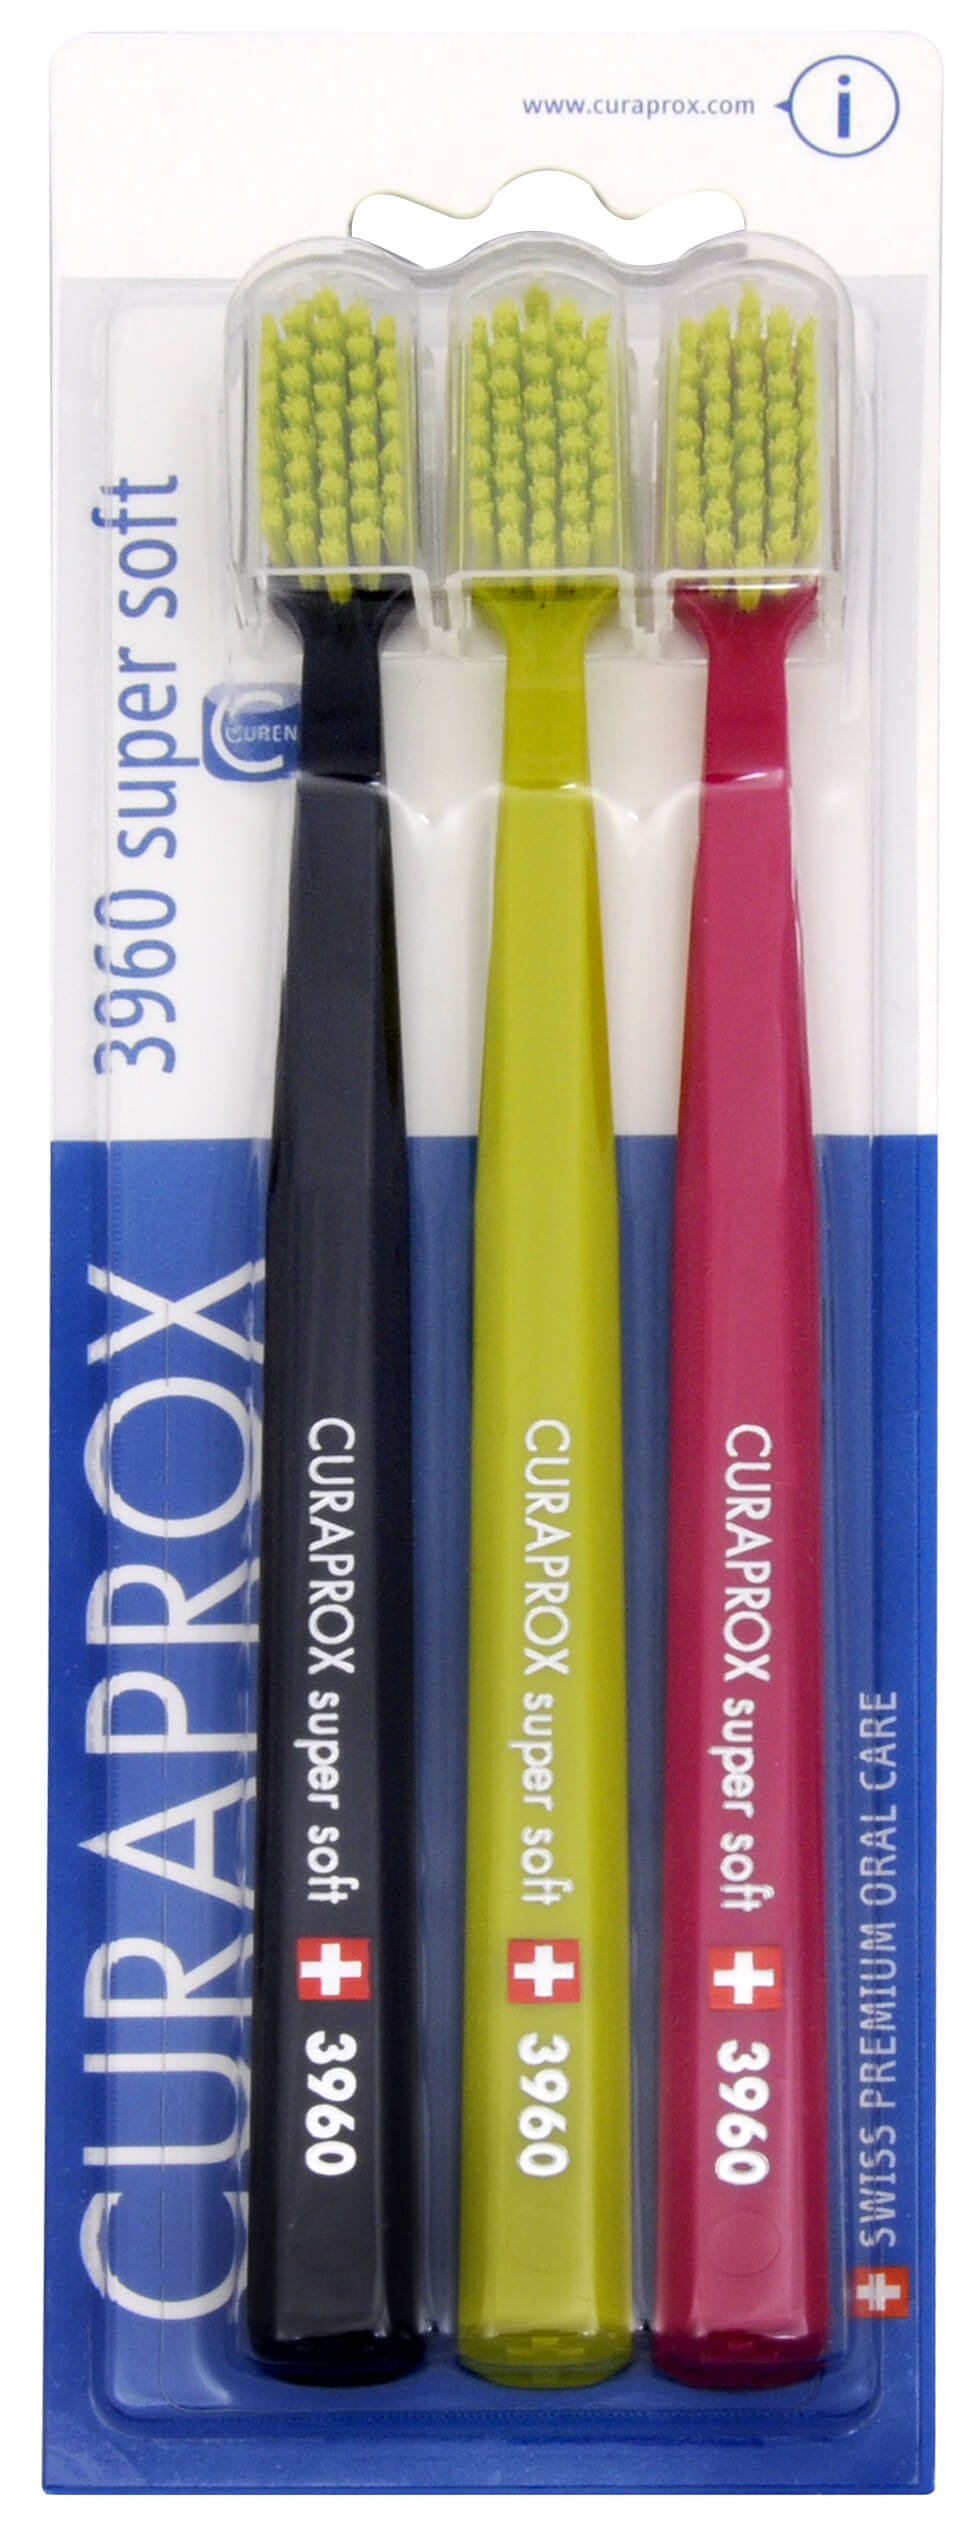 Zobrazit detail výrobku Curaprox Extra jemný zubní kartáček 3960 Super Soft 3 ks